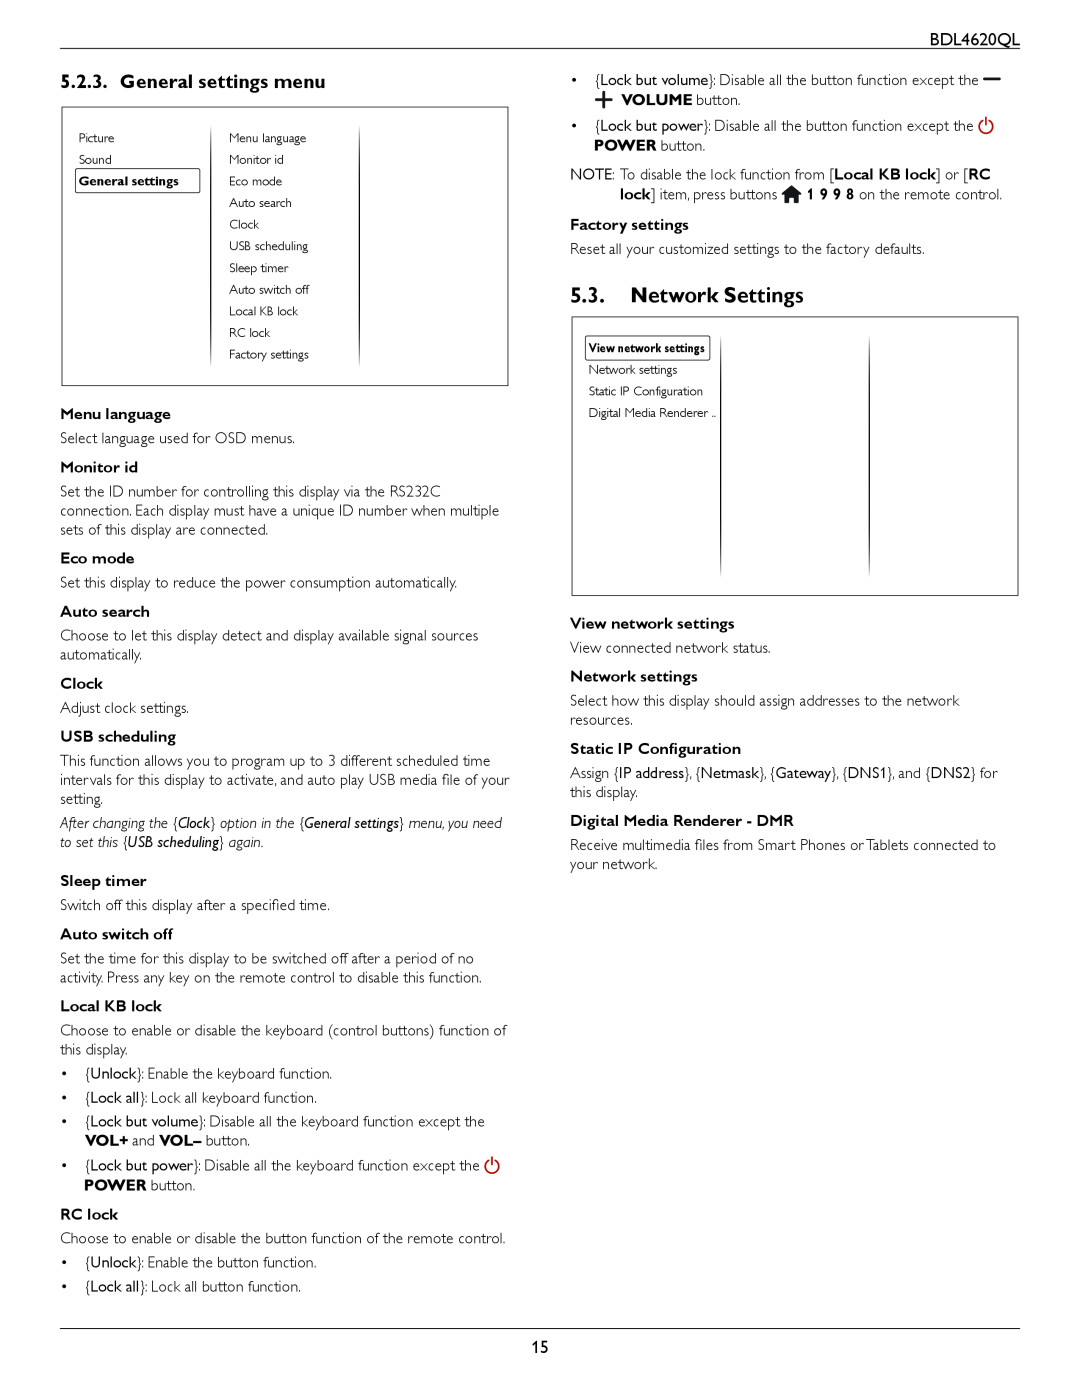 Philips BDL4620QL user manual Network Settings, General settings menu 